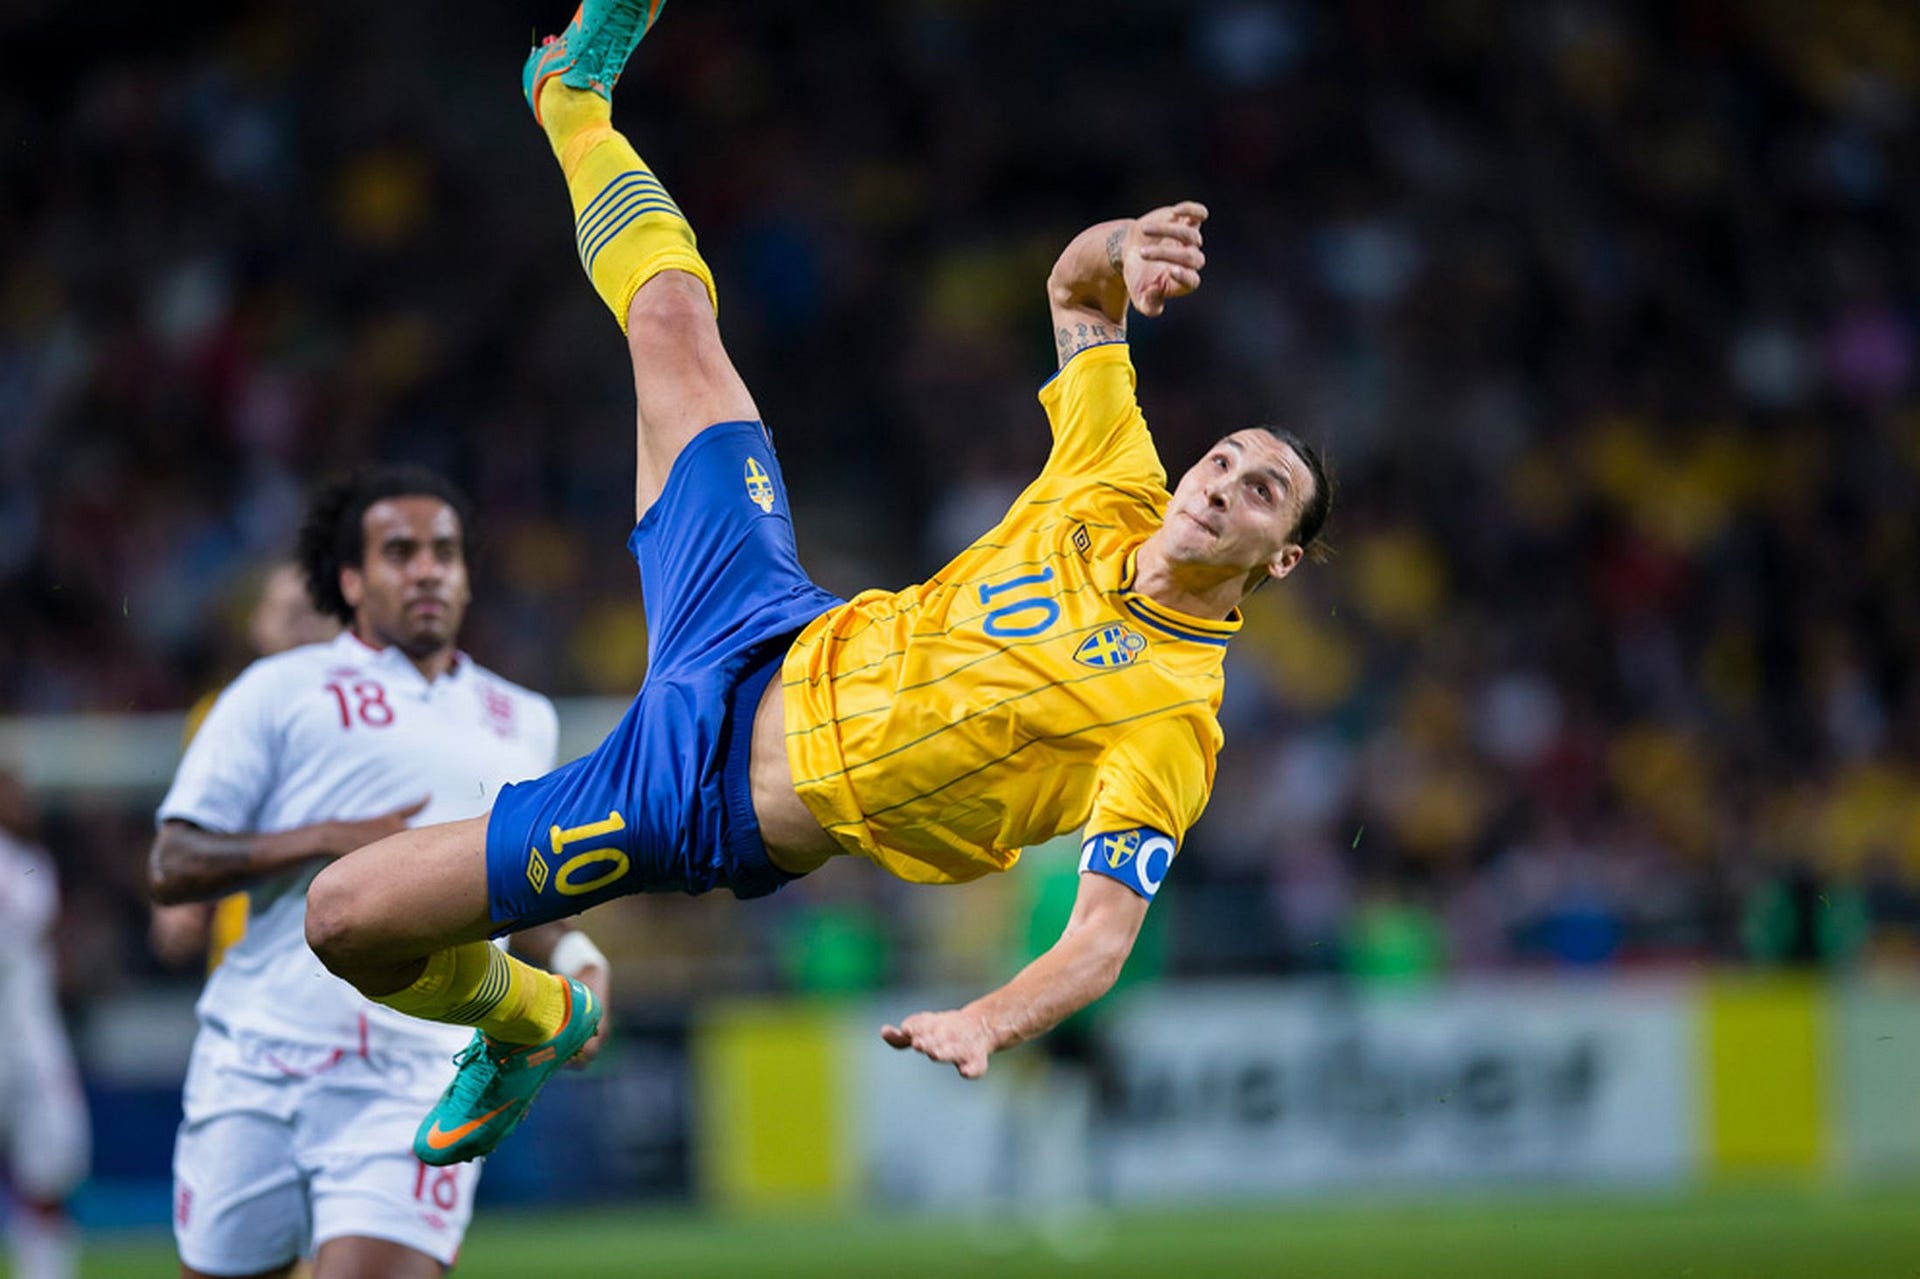 Resultado de imagen para zlatan ibrahimovic sweden goal